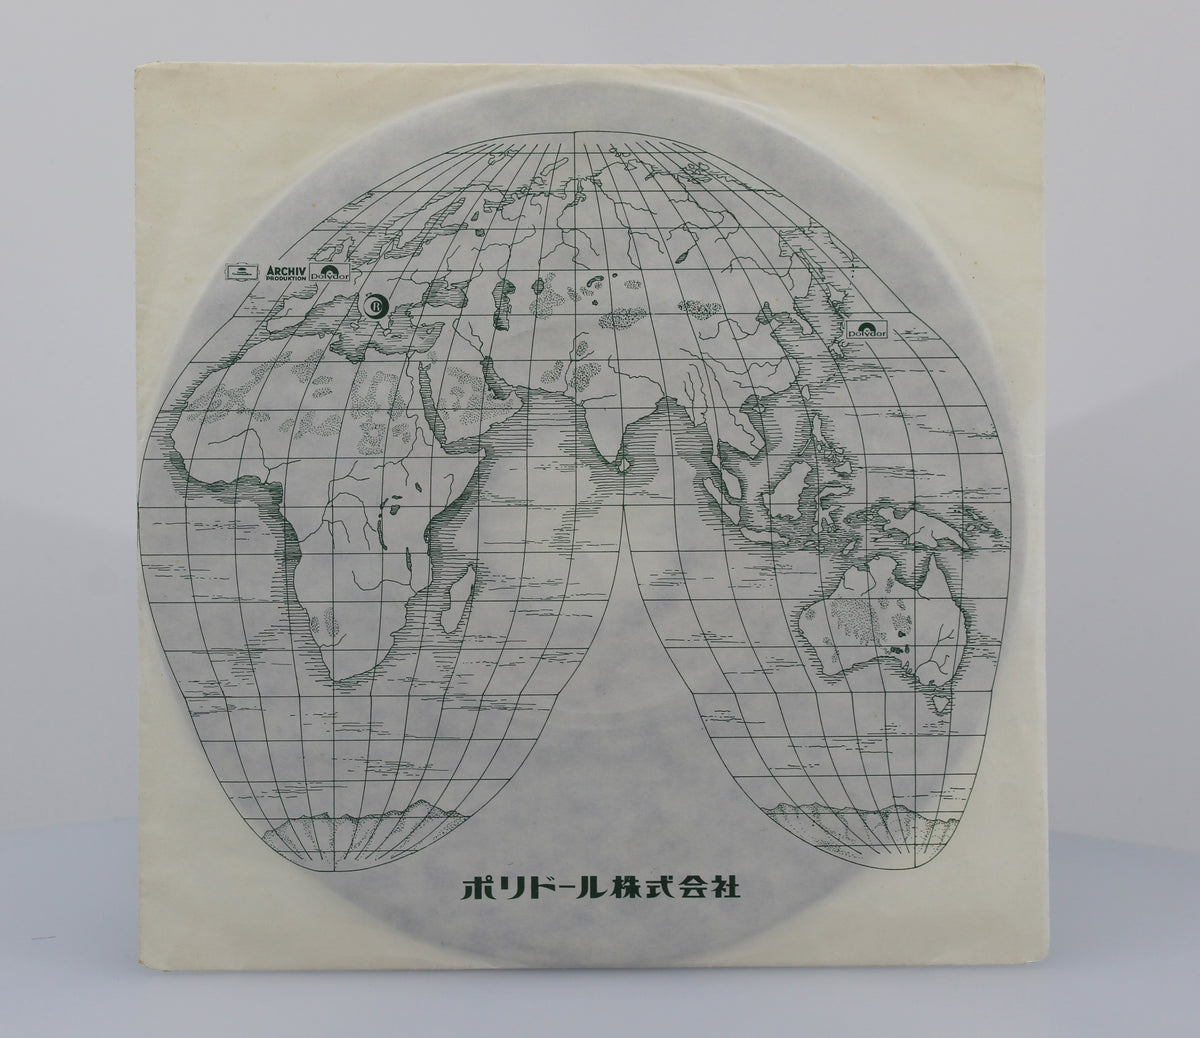 Bee Gees, Vinyl 7&quot; (45rpm), Japan 1979